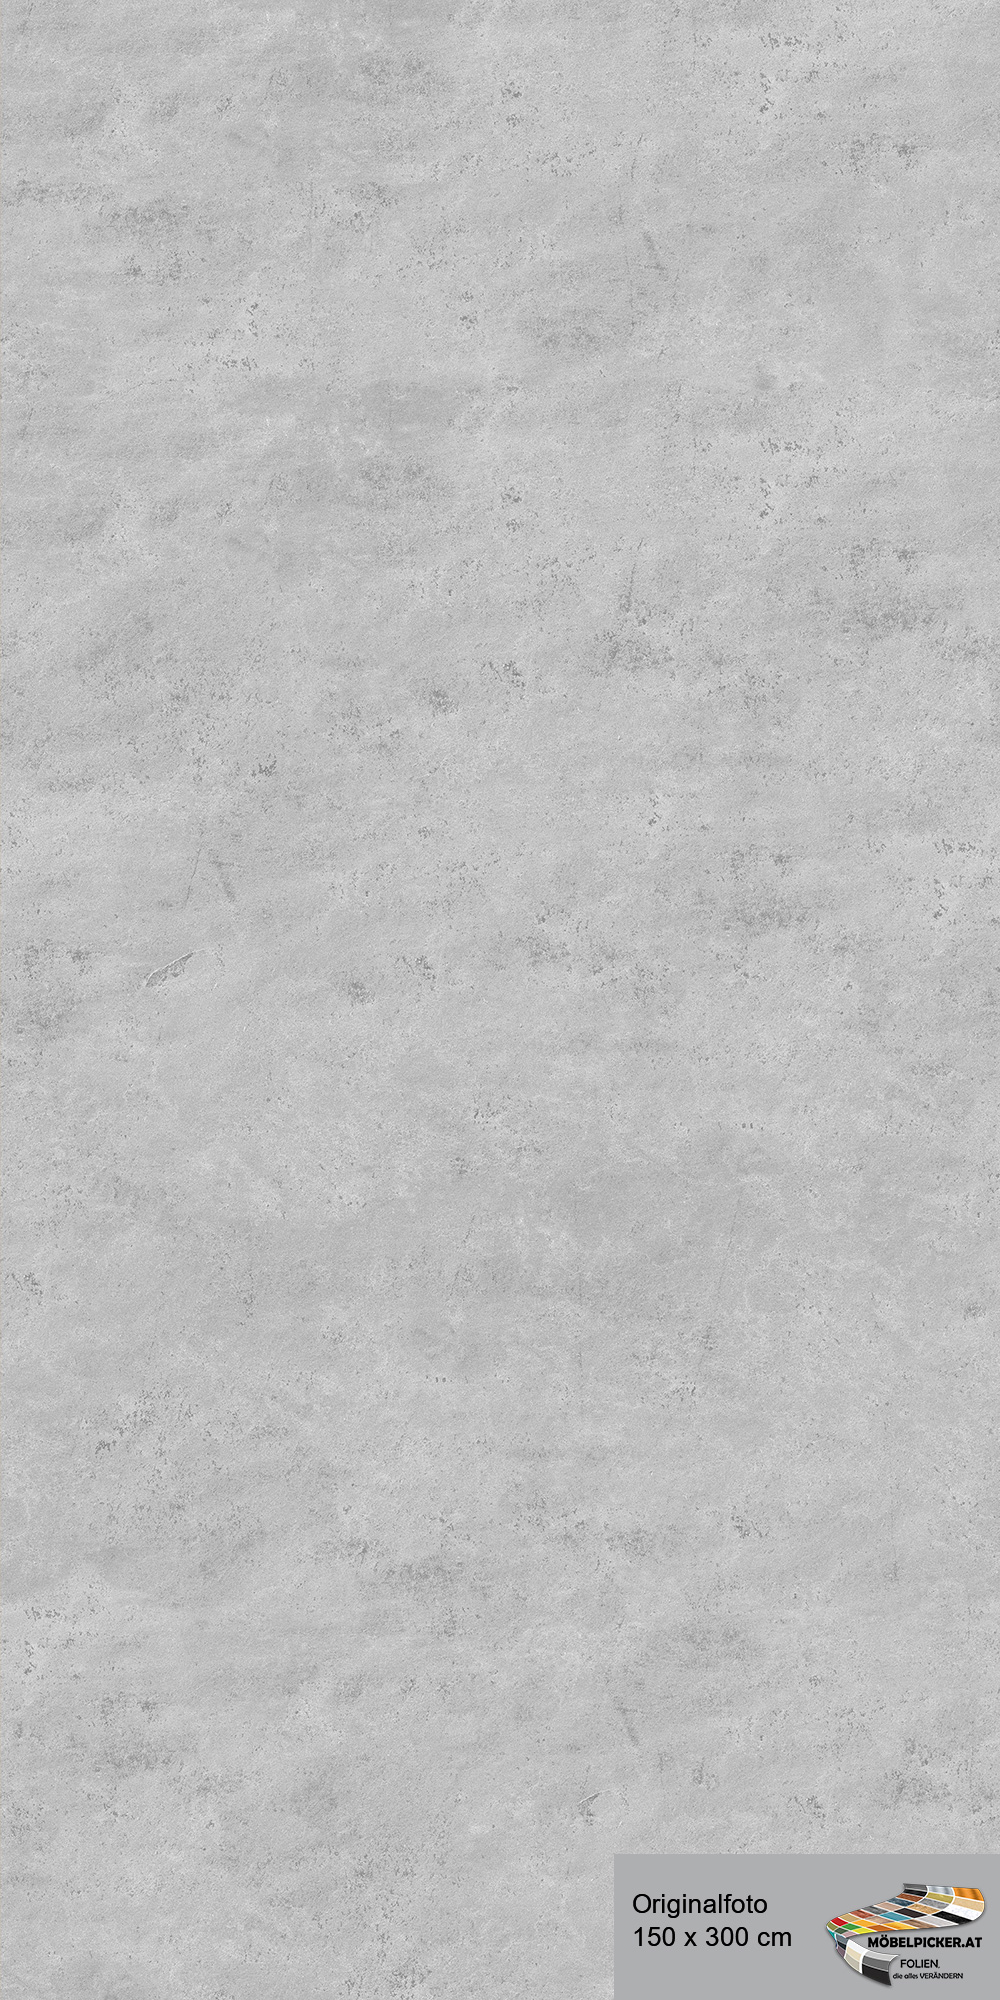 Alu-Design-Platte Stein Grau - Aluminiumverbundplatte für Bäder, WC, Büro, Wände, Wohnzimmer